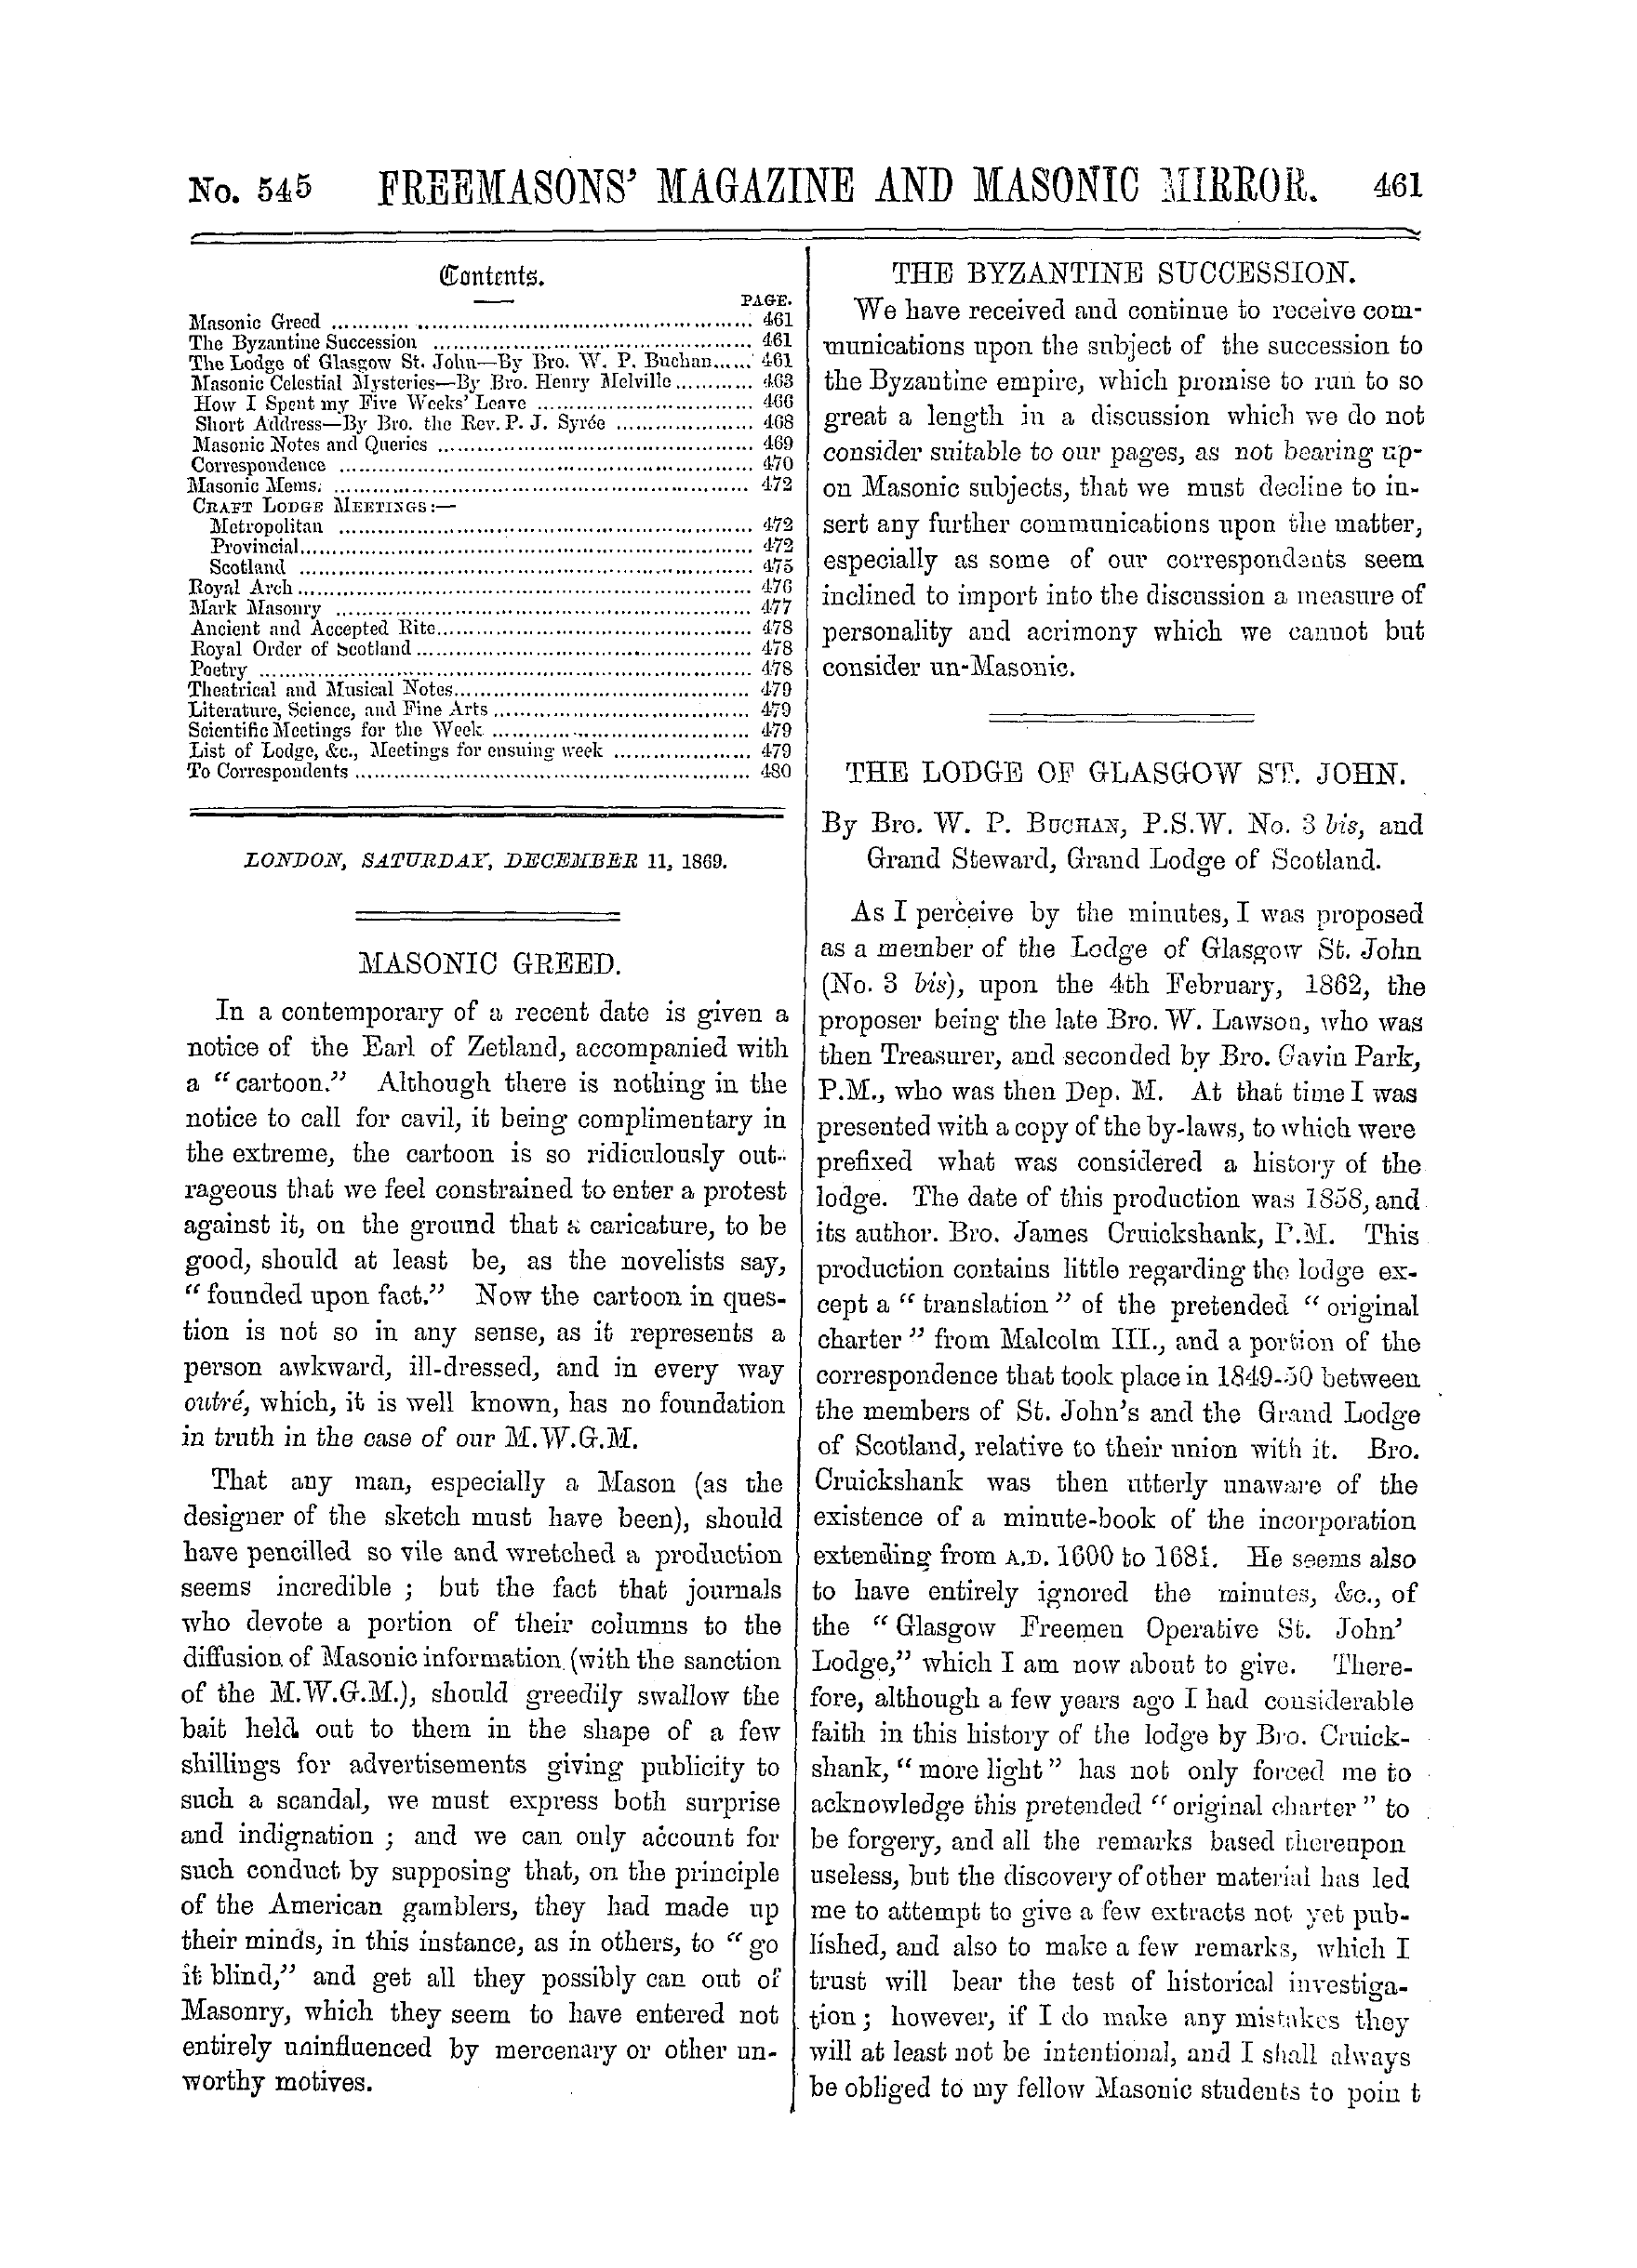 The Freemasons' Monthly Magazine: 1869-12-11: 1